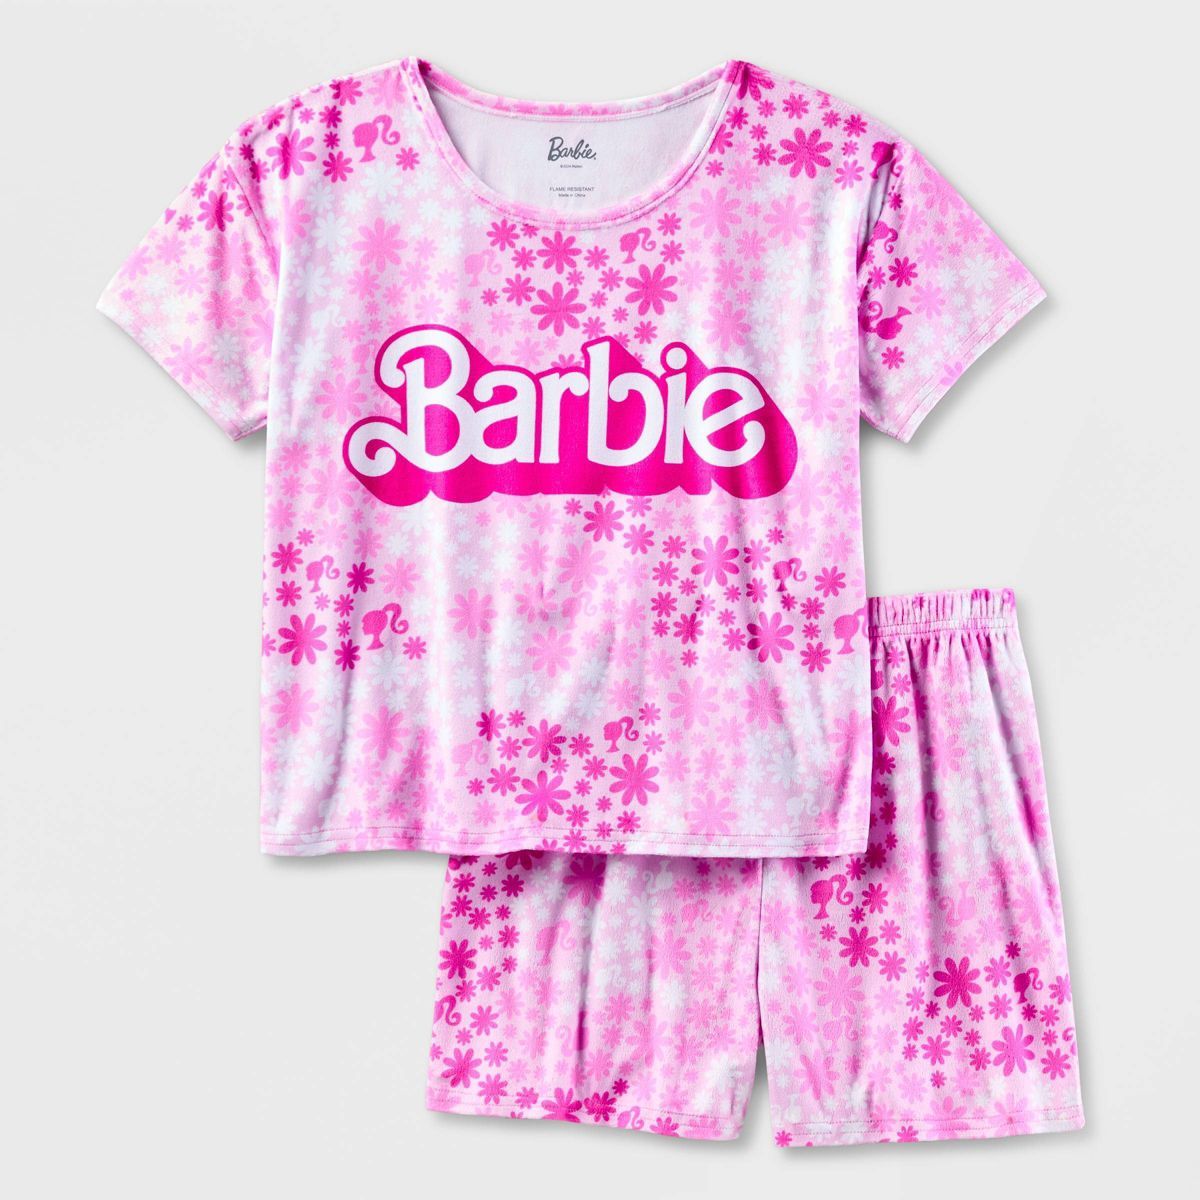 Girls' Barbie 2pc Short Sleeve Pajama Set - Pink | Target